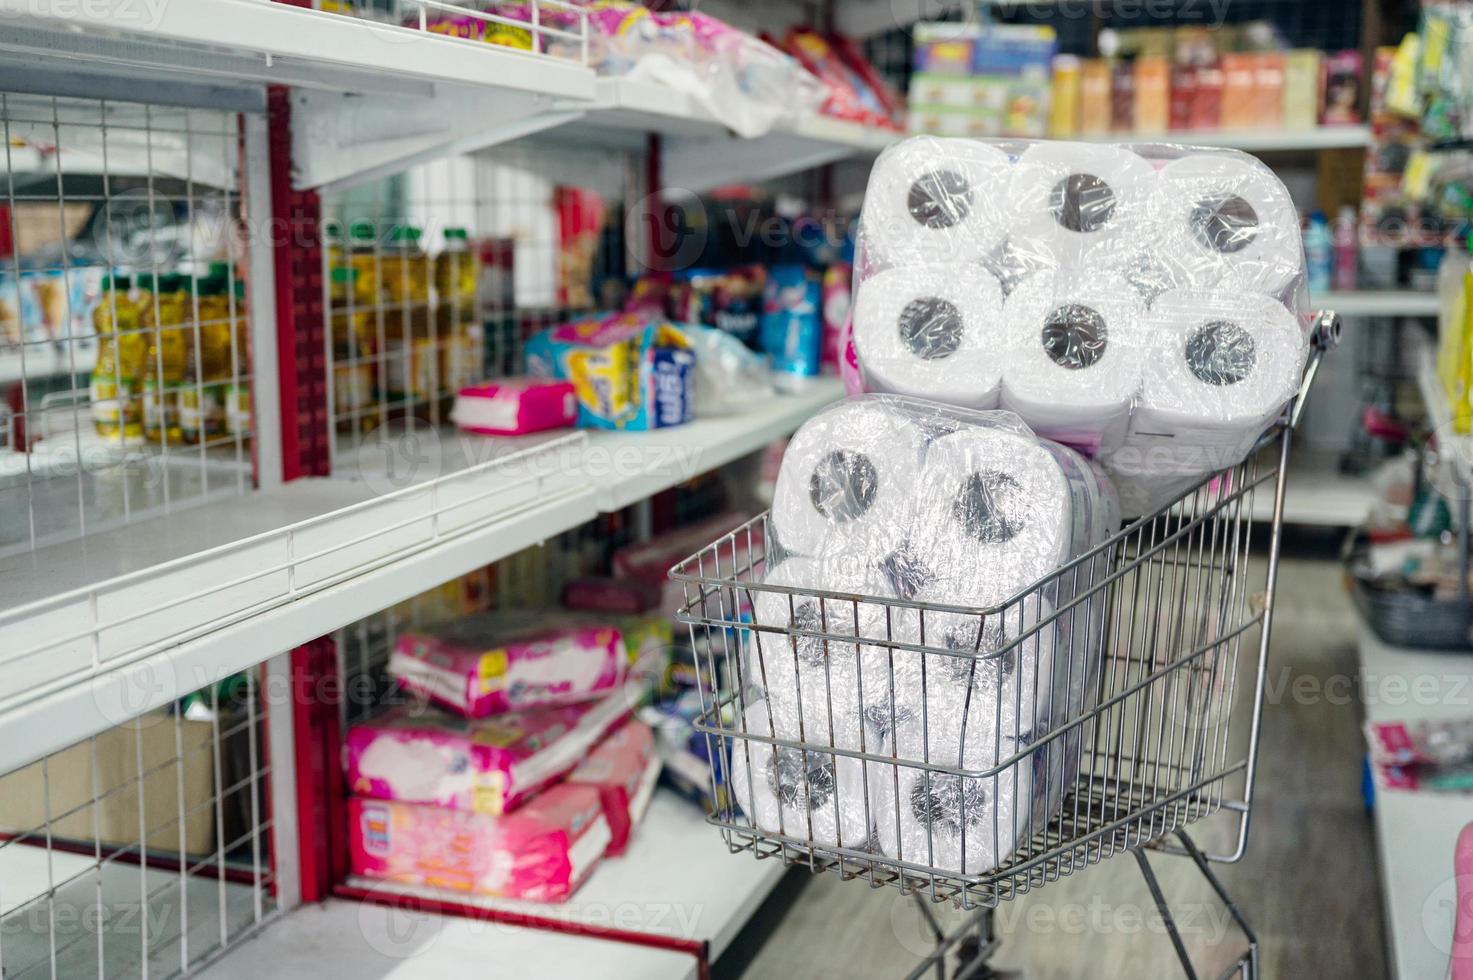 Customer hoarding tissue, toilet paper on shopping cart in retailer photo